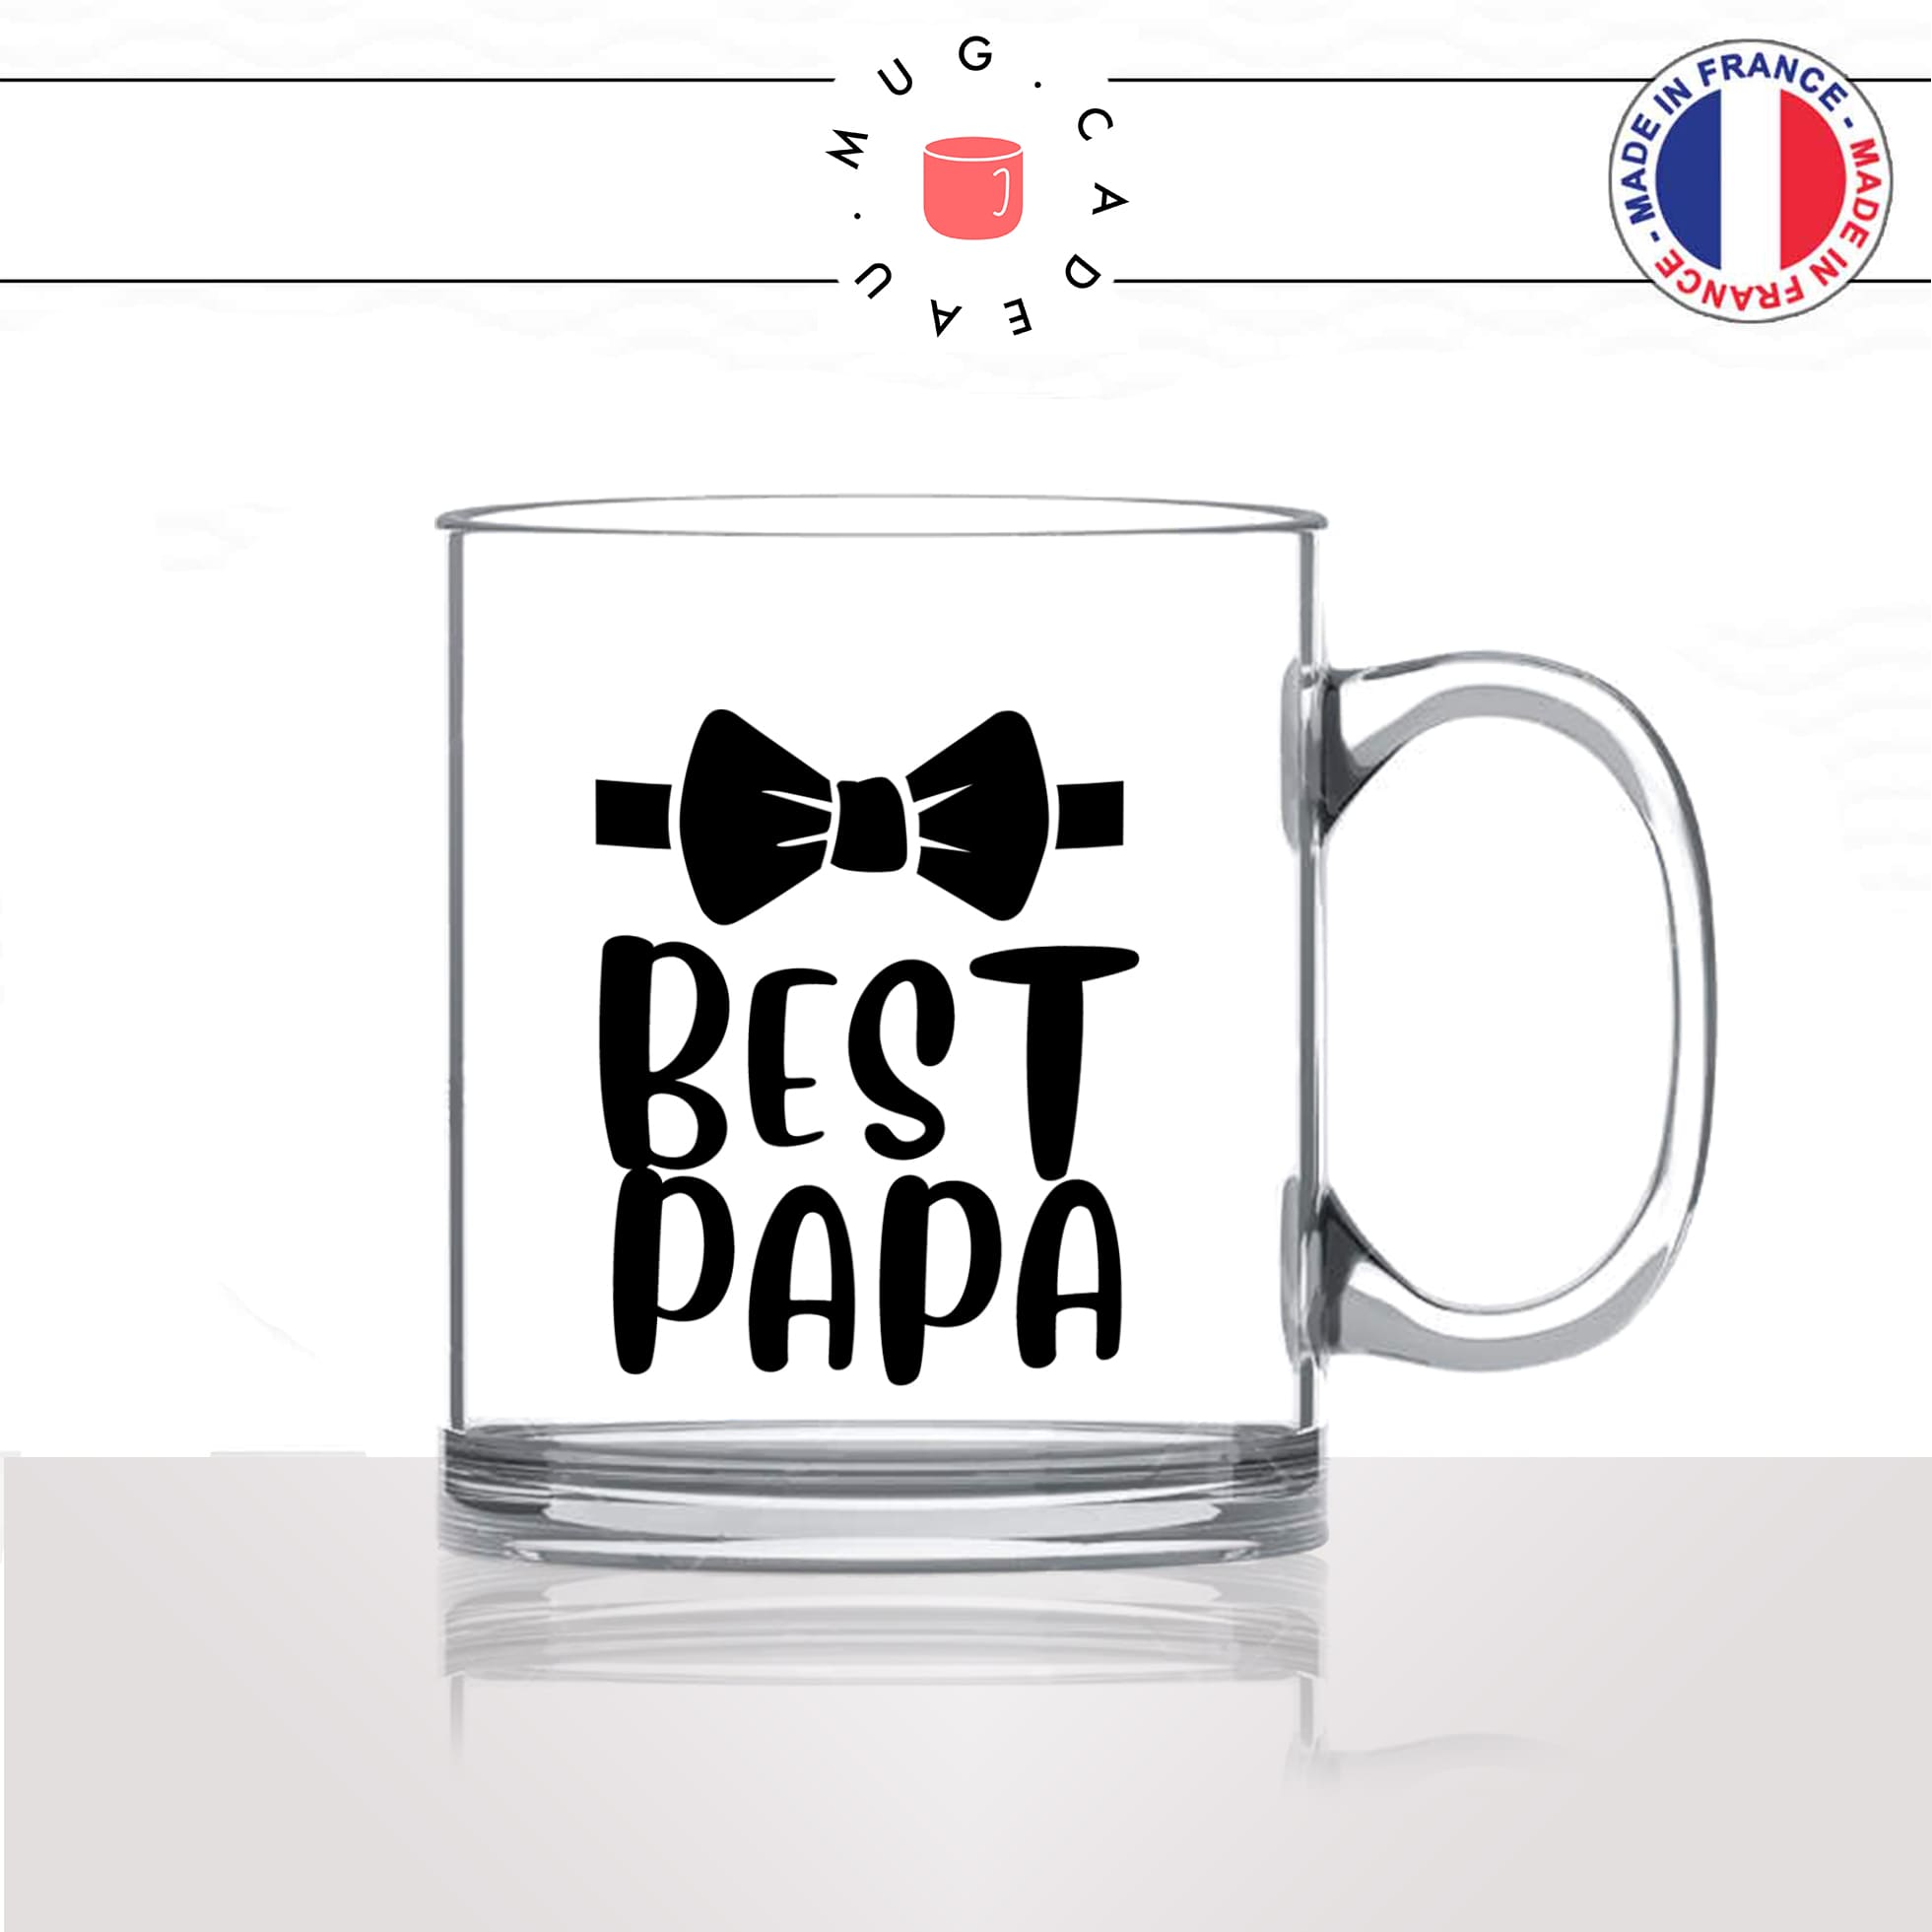 mug-tasse-en-verre-transparent-glass-fete-des-pères-best-papa-le-meilleur-noeud-papillon-homme-mignon-idée-cadeau-fun-cool-café-thé2